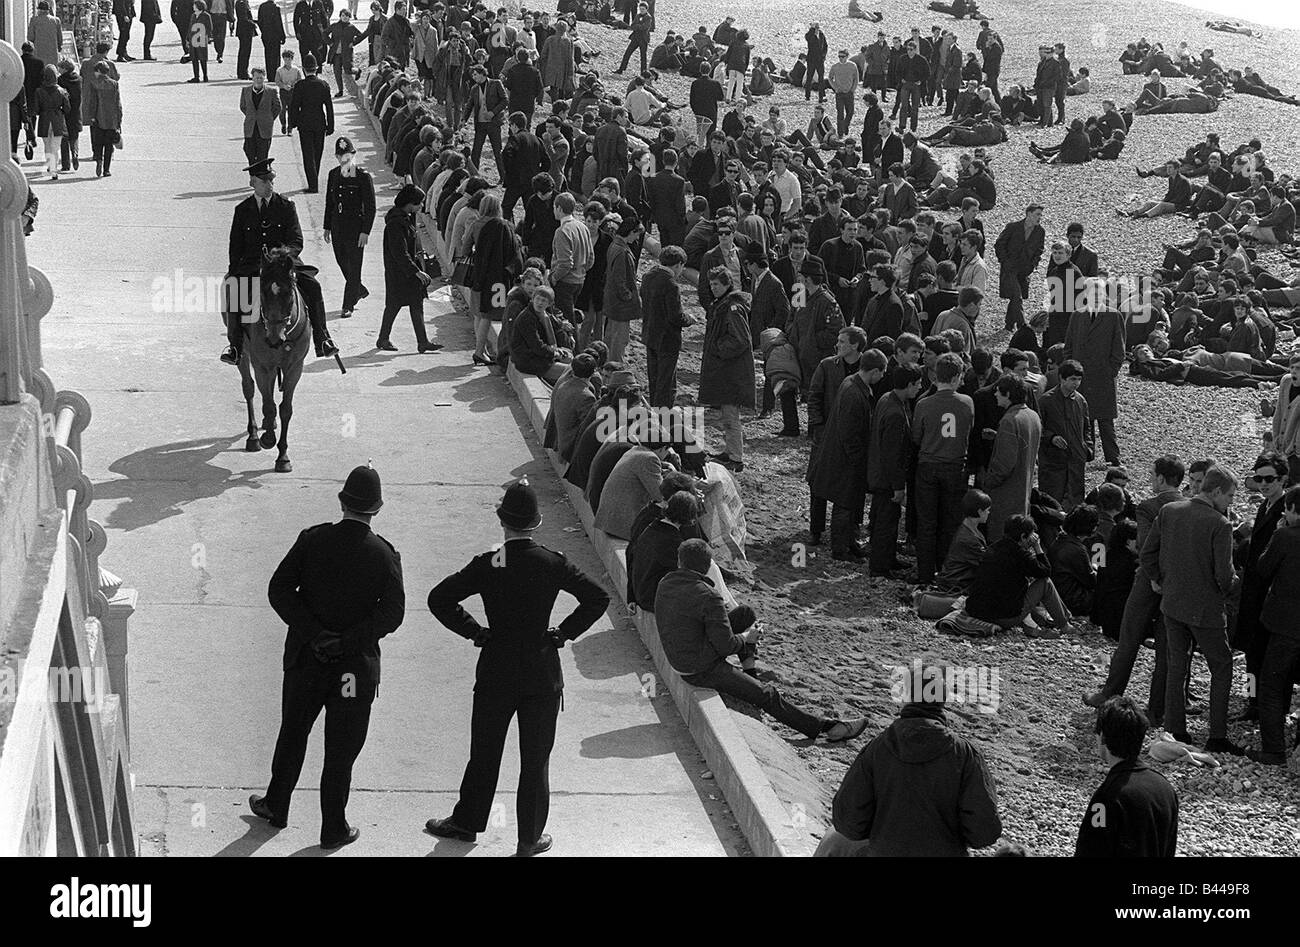 La culture jeune Mod Mods Swinging Sixties Collections Avril 1965 mods sur le front de mer de Brighton, épié par la police locale Banque D'Images